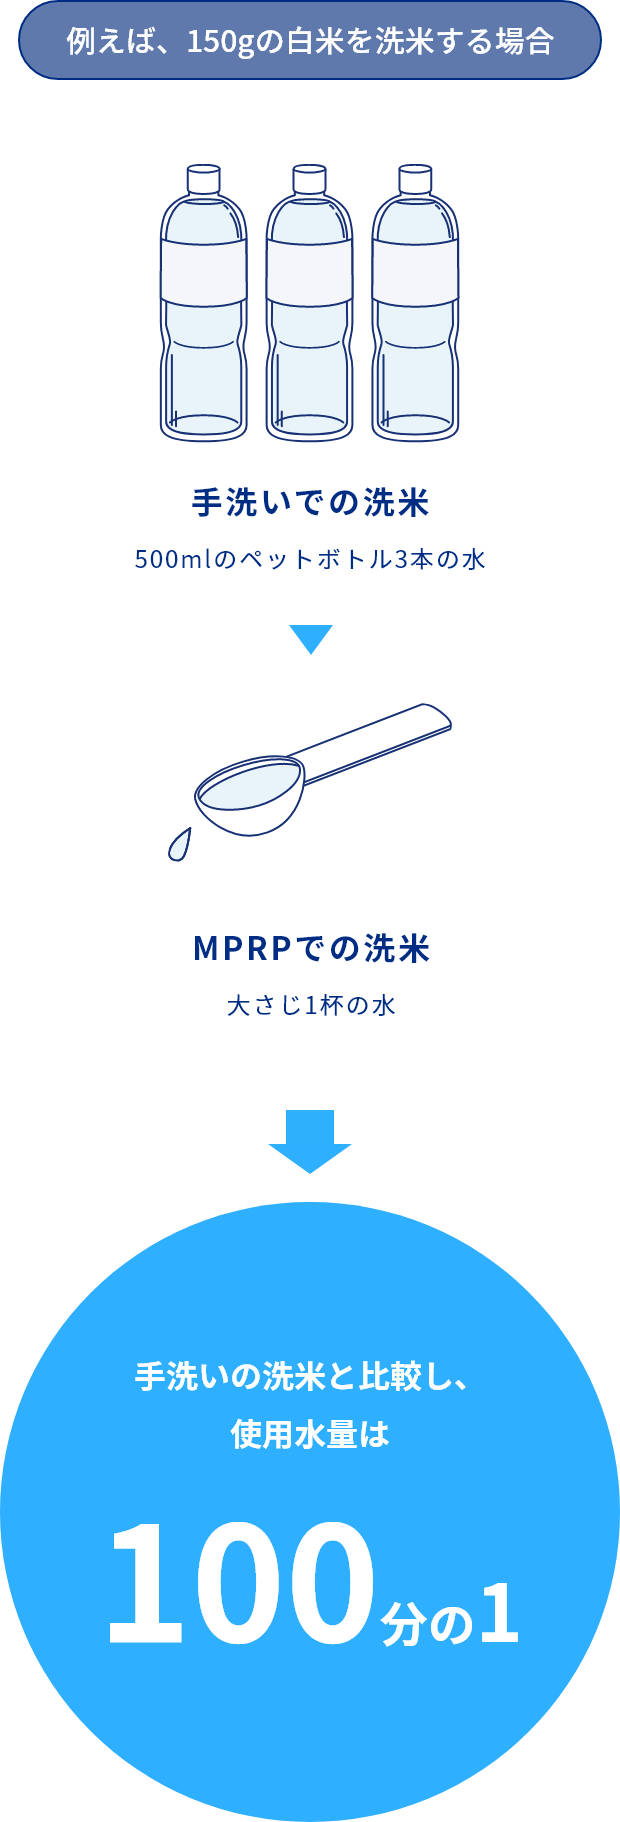 手洗いでの洗米する際の水の量とMPRPでの洗米する際の水の量を比較する図